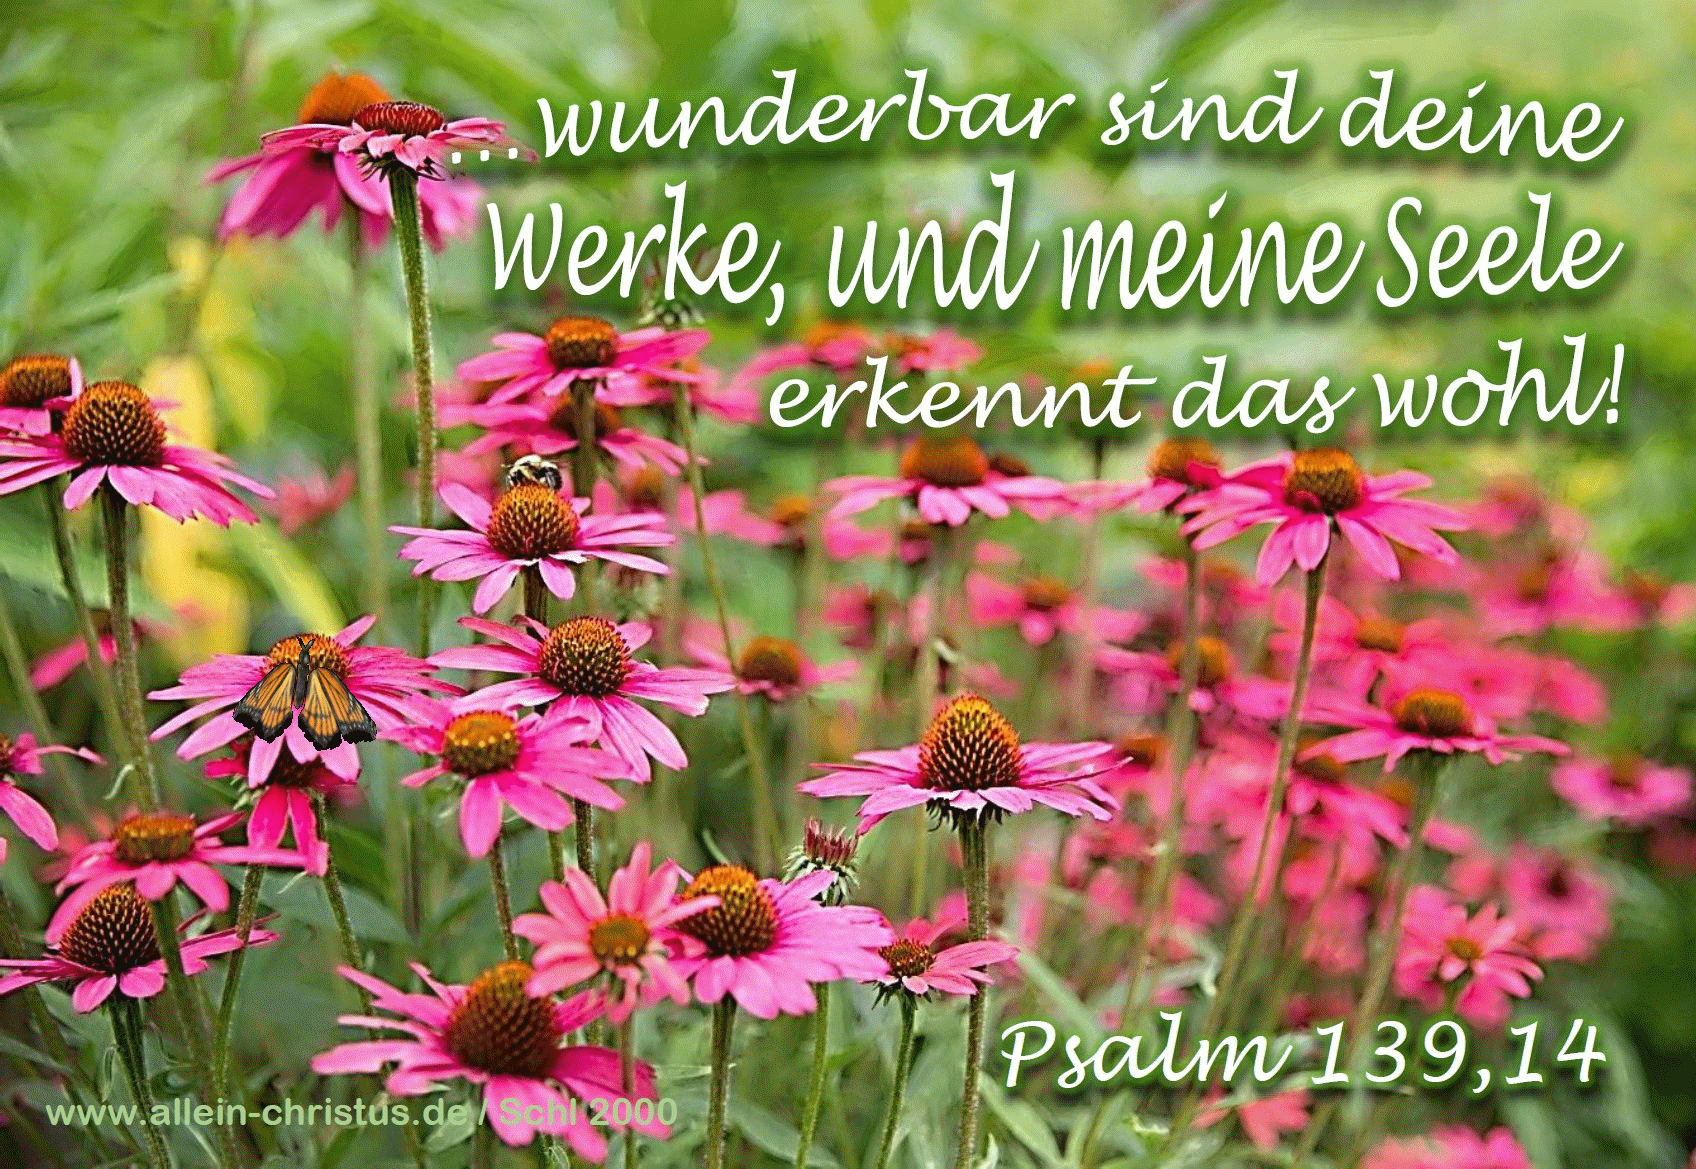 Psalm 139,14 b - Wunderbar sind deine Werke, und meine Seele erkennt das wohl!